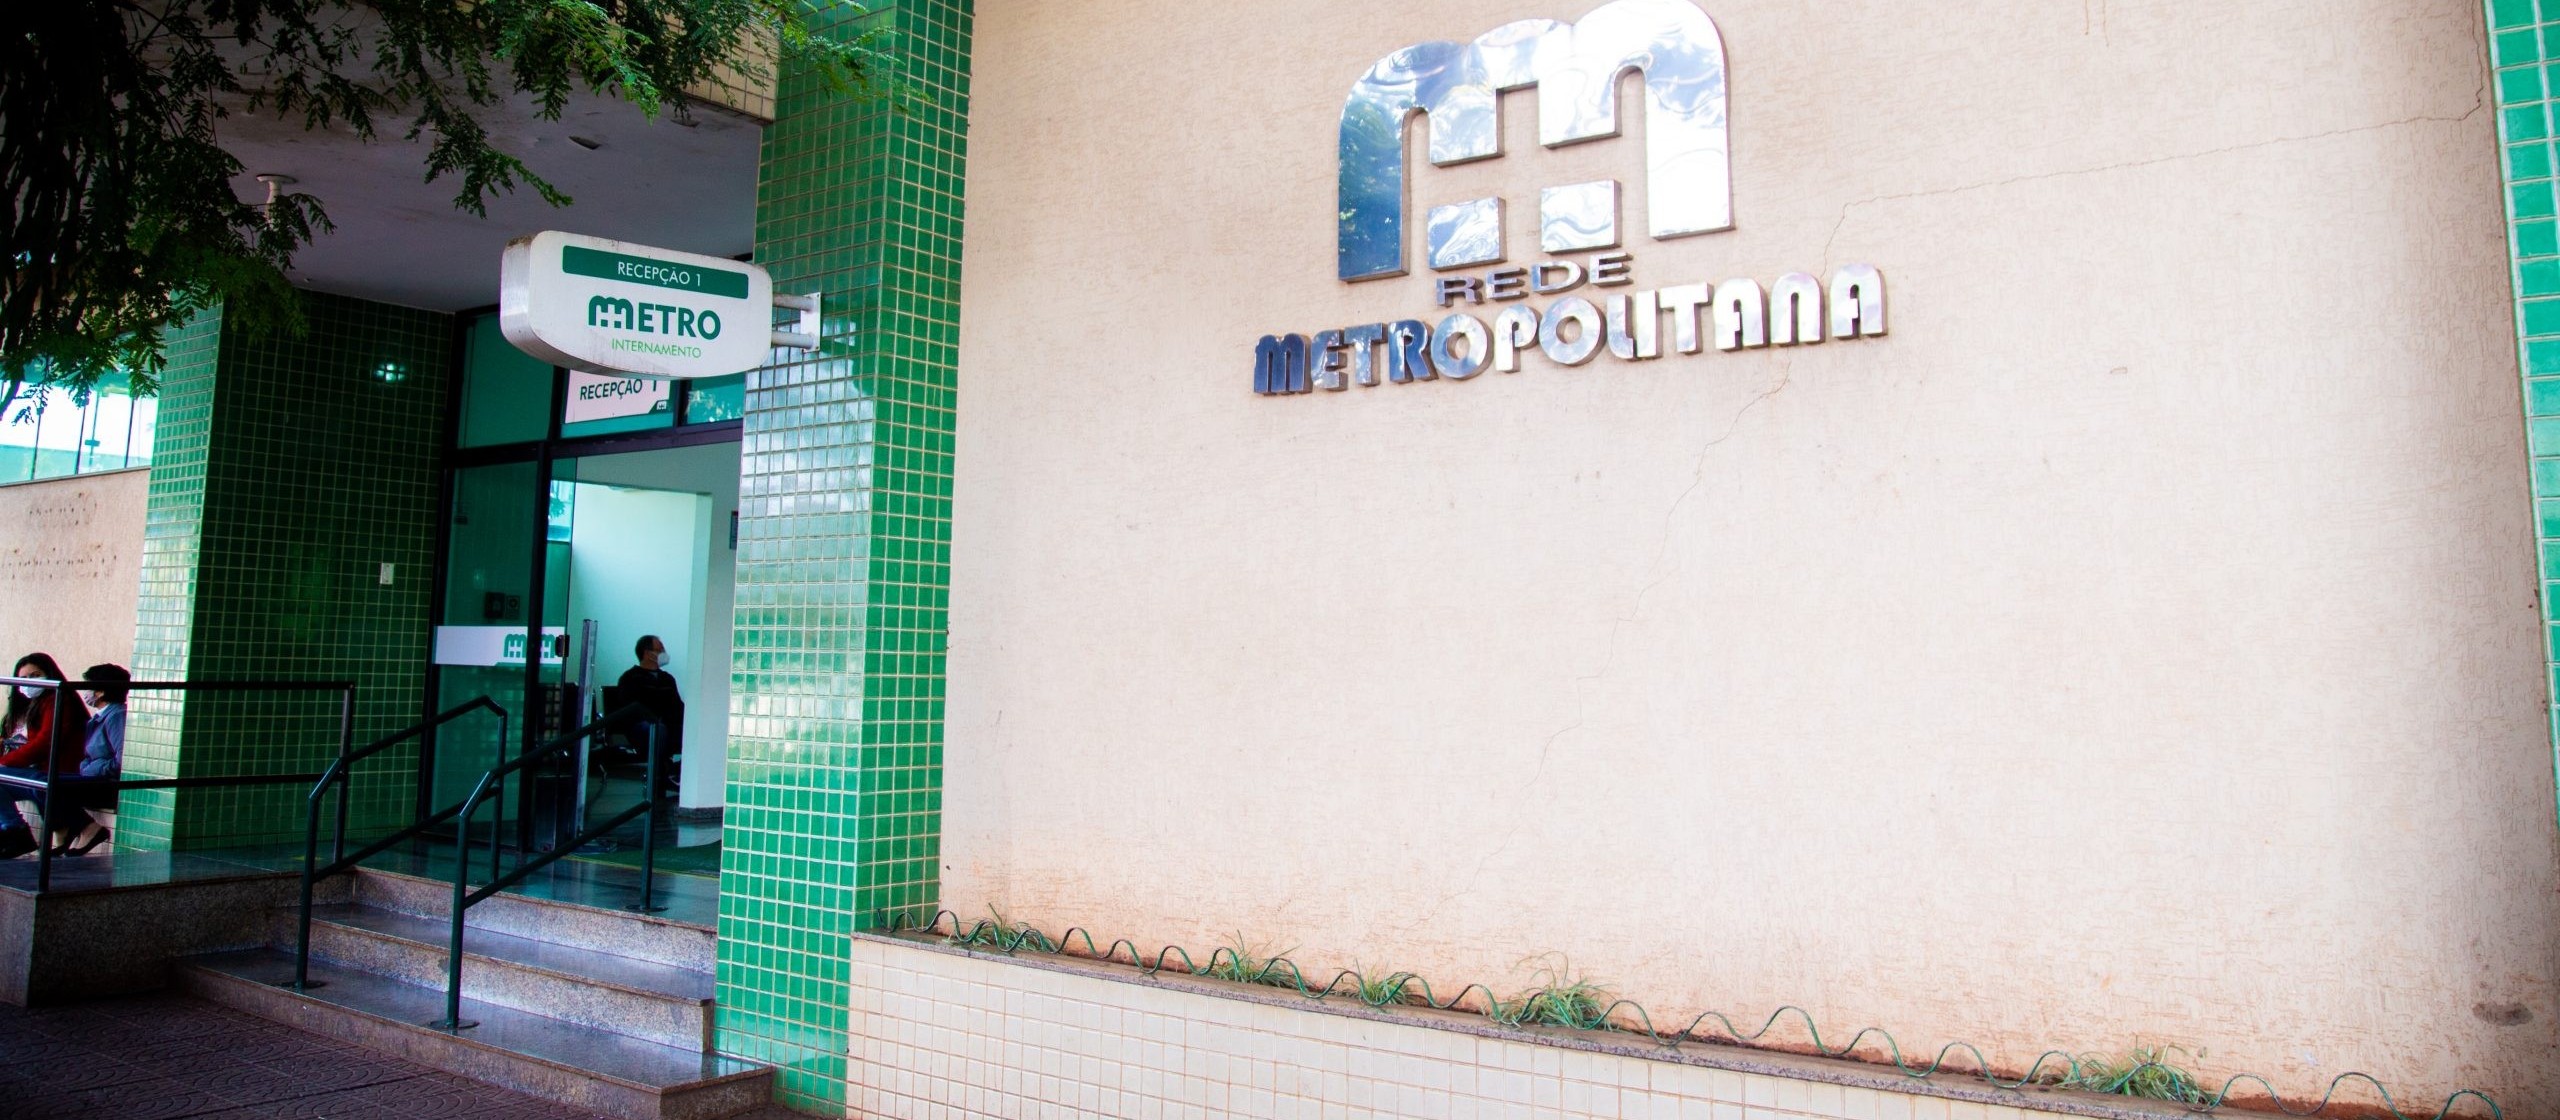 Deputado quer abrir CPI para investigar Hospital Metropolitano